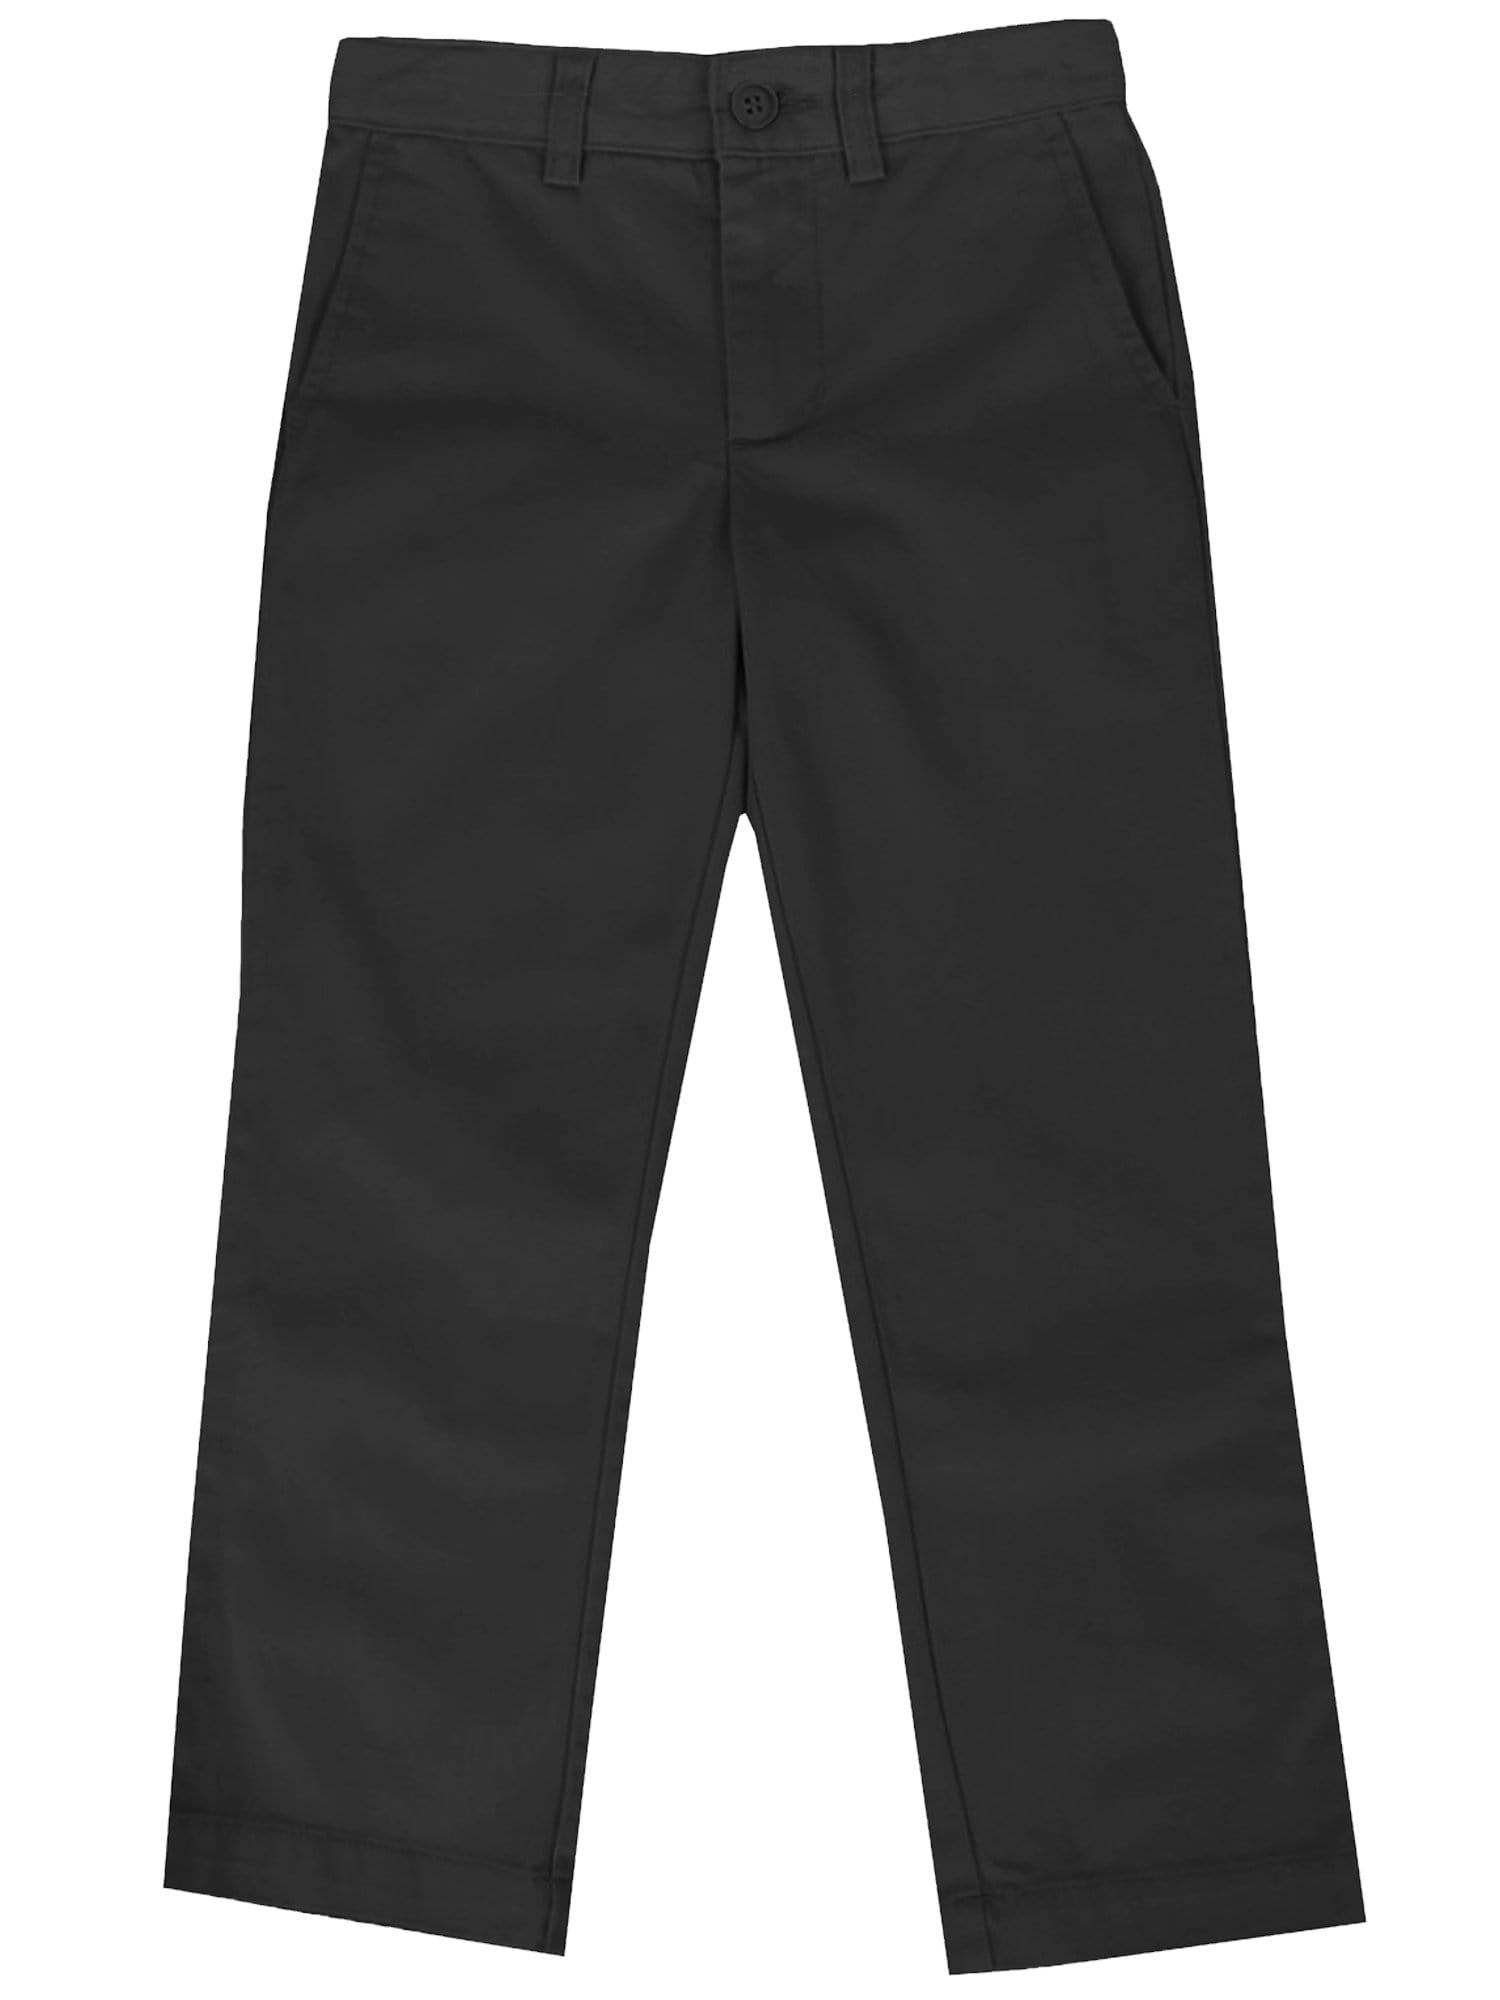 Cotton Black Uniform Pant